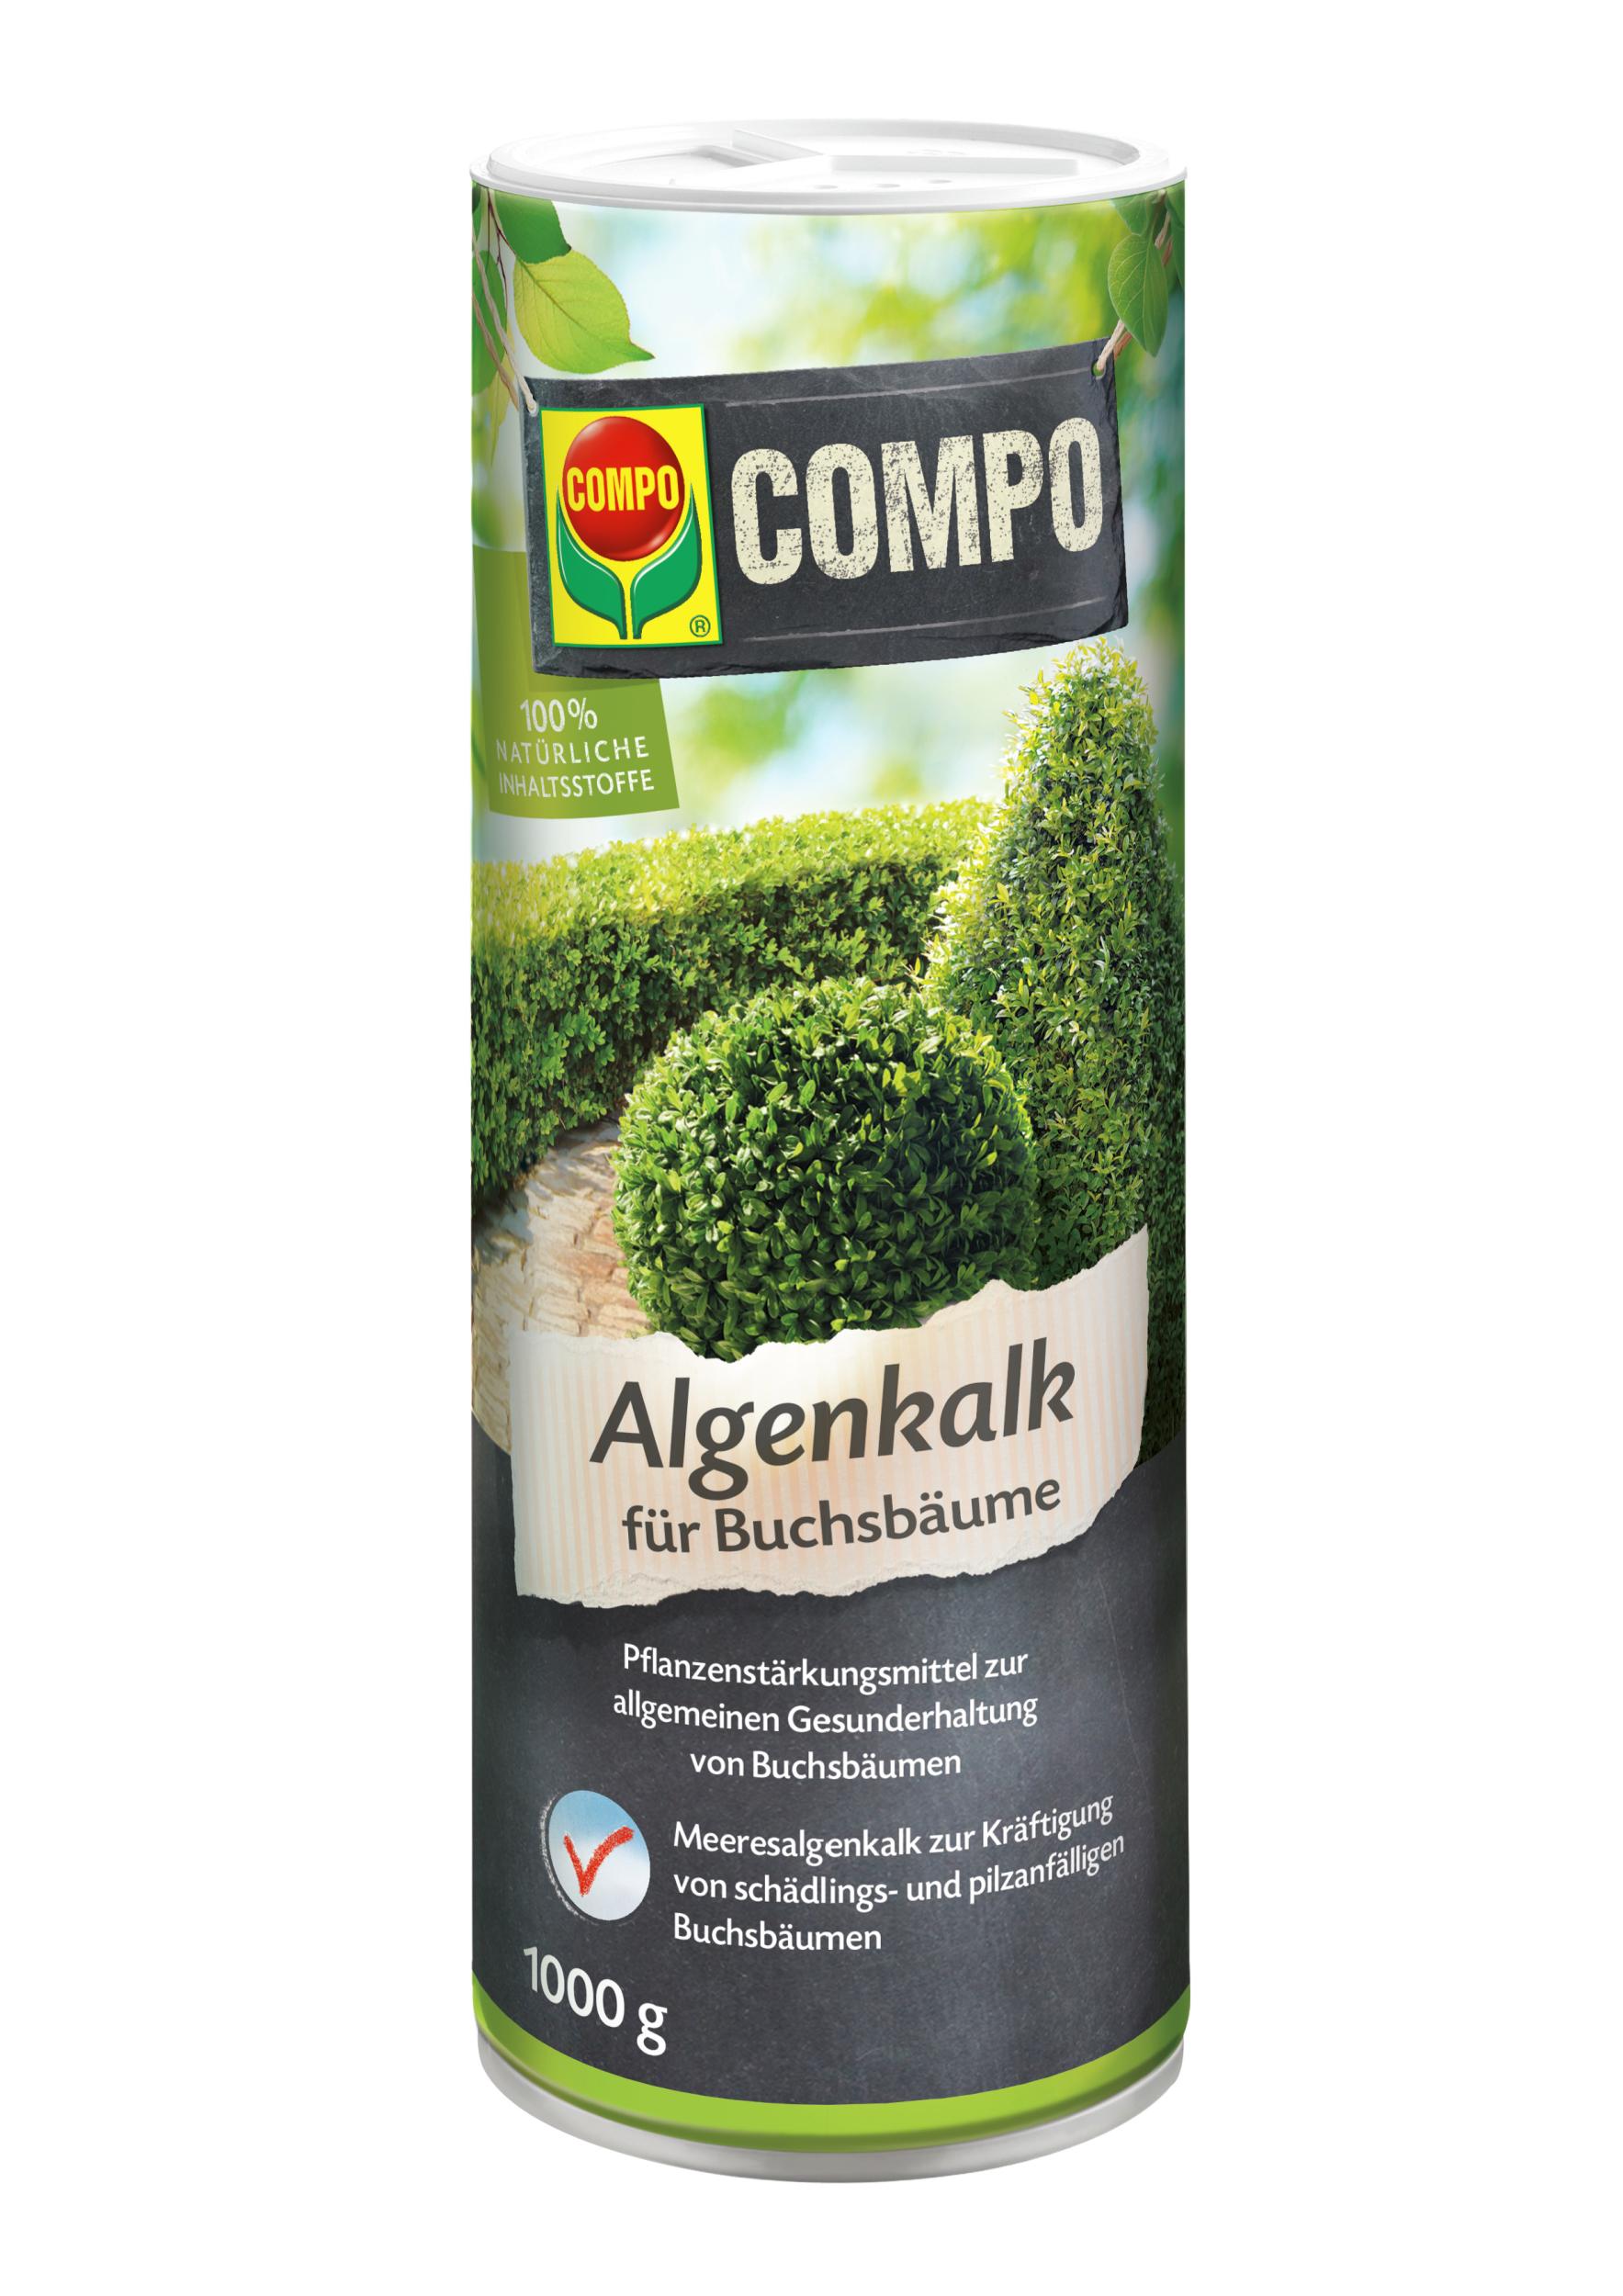 Compo Algenkalk für Buchsbäume - 1 kg